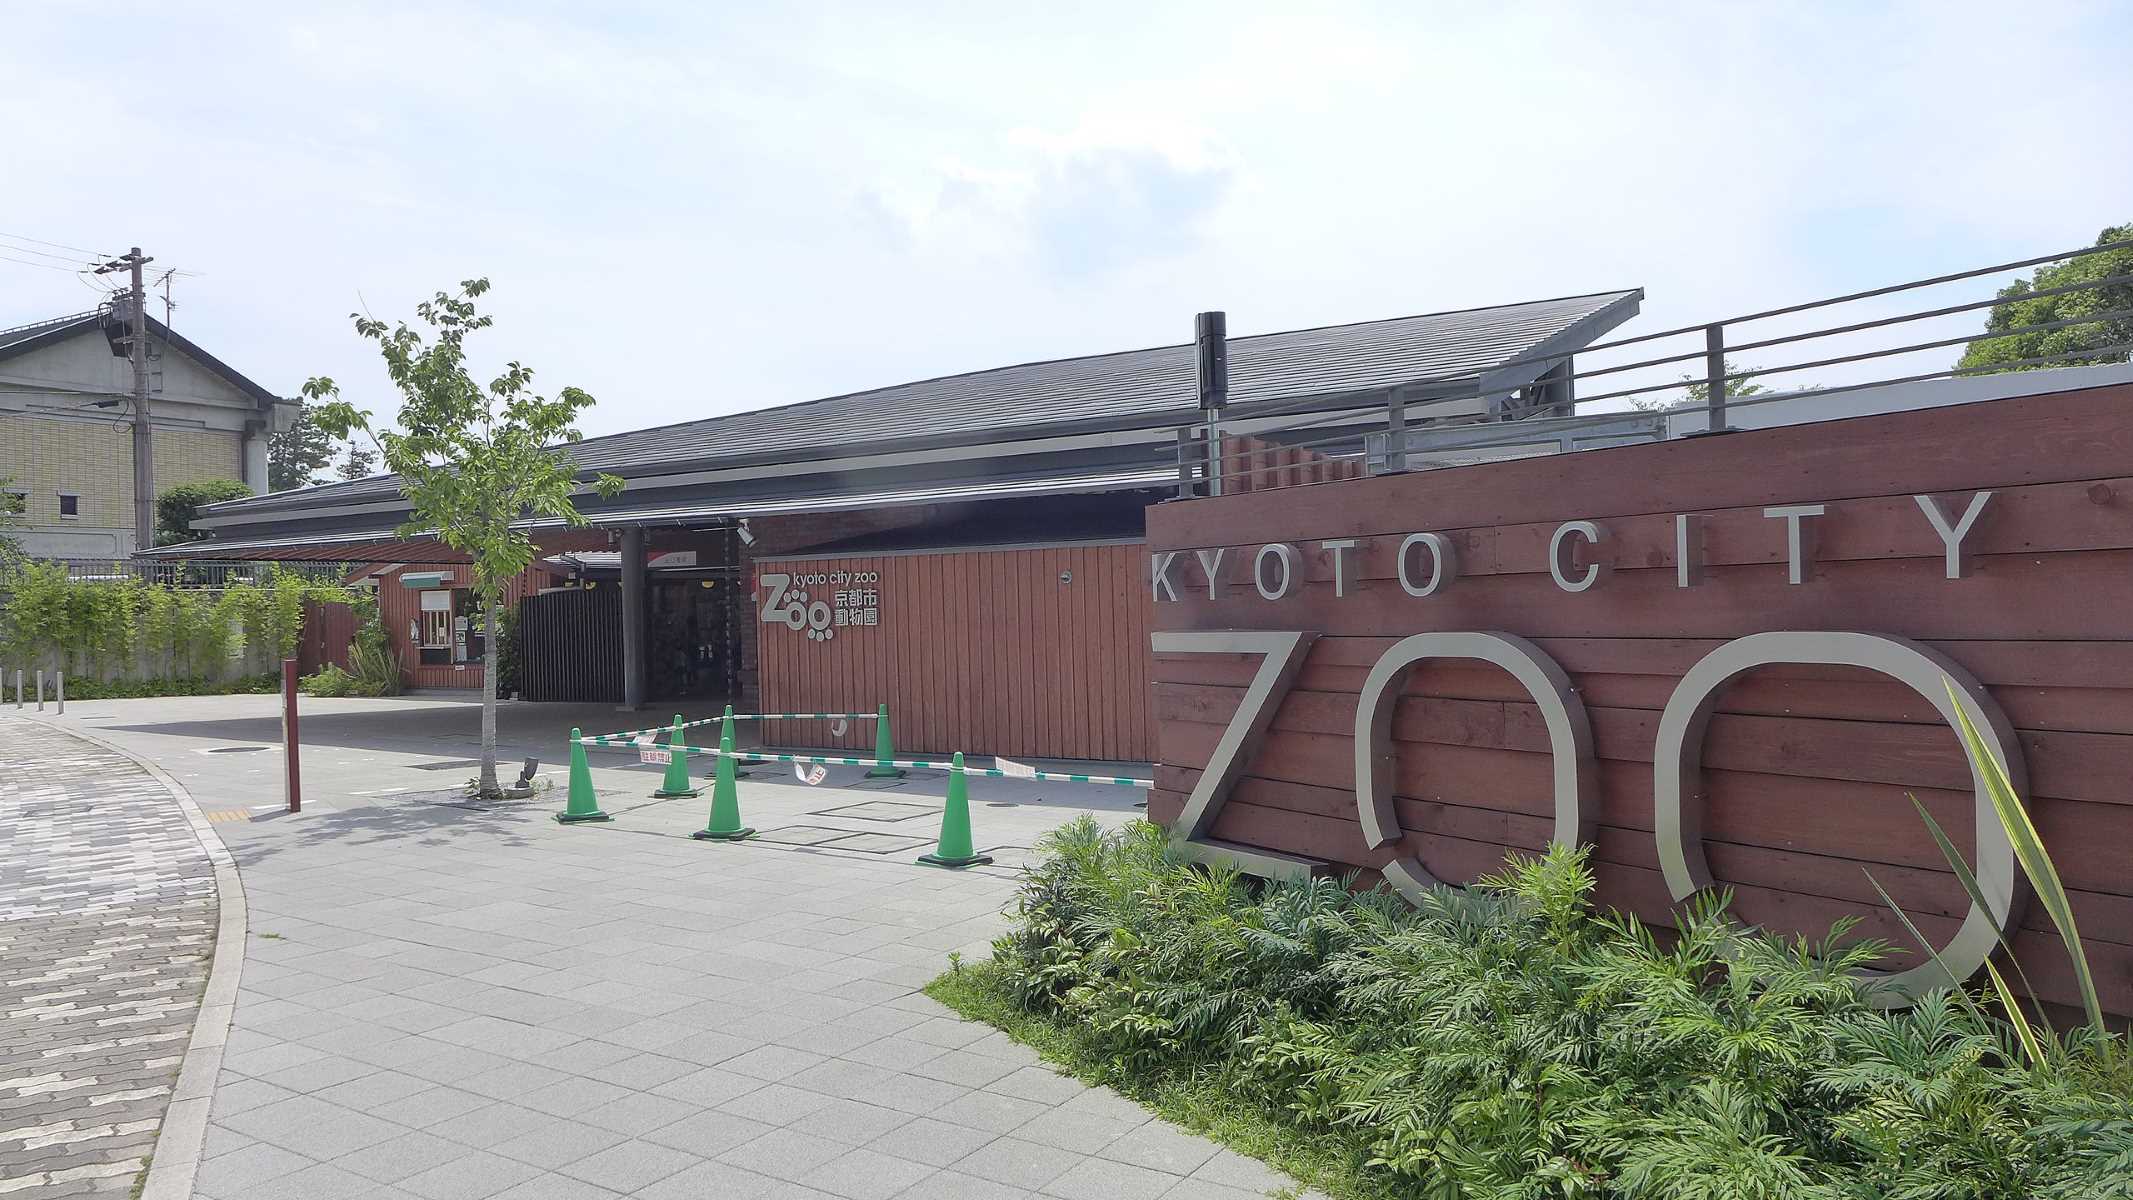 15-astonishing-facts-about-kyoto-municipal-zoo